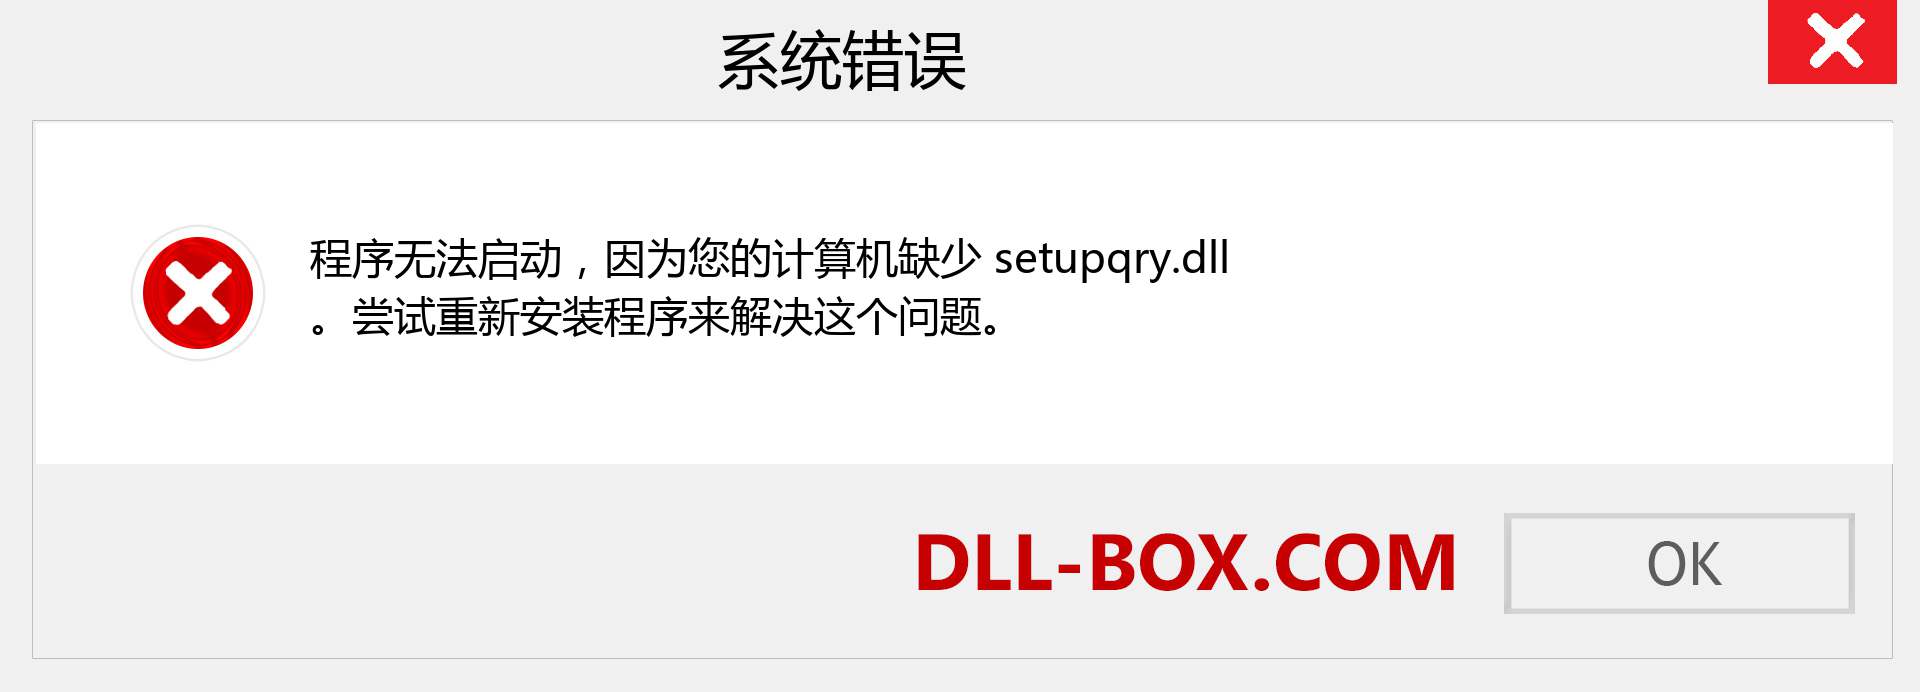 setupqry.dll 文件丢失？。 适用于 Windows 7、8、10 的下载 - 修复 Windows、照片、图像上的 setupqry dll 丢失错误